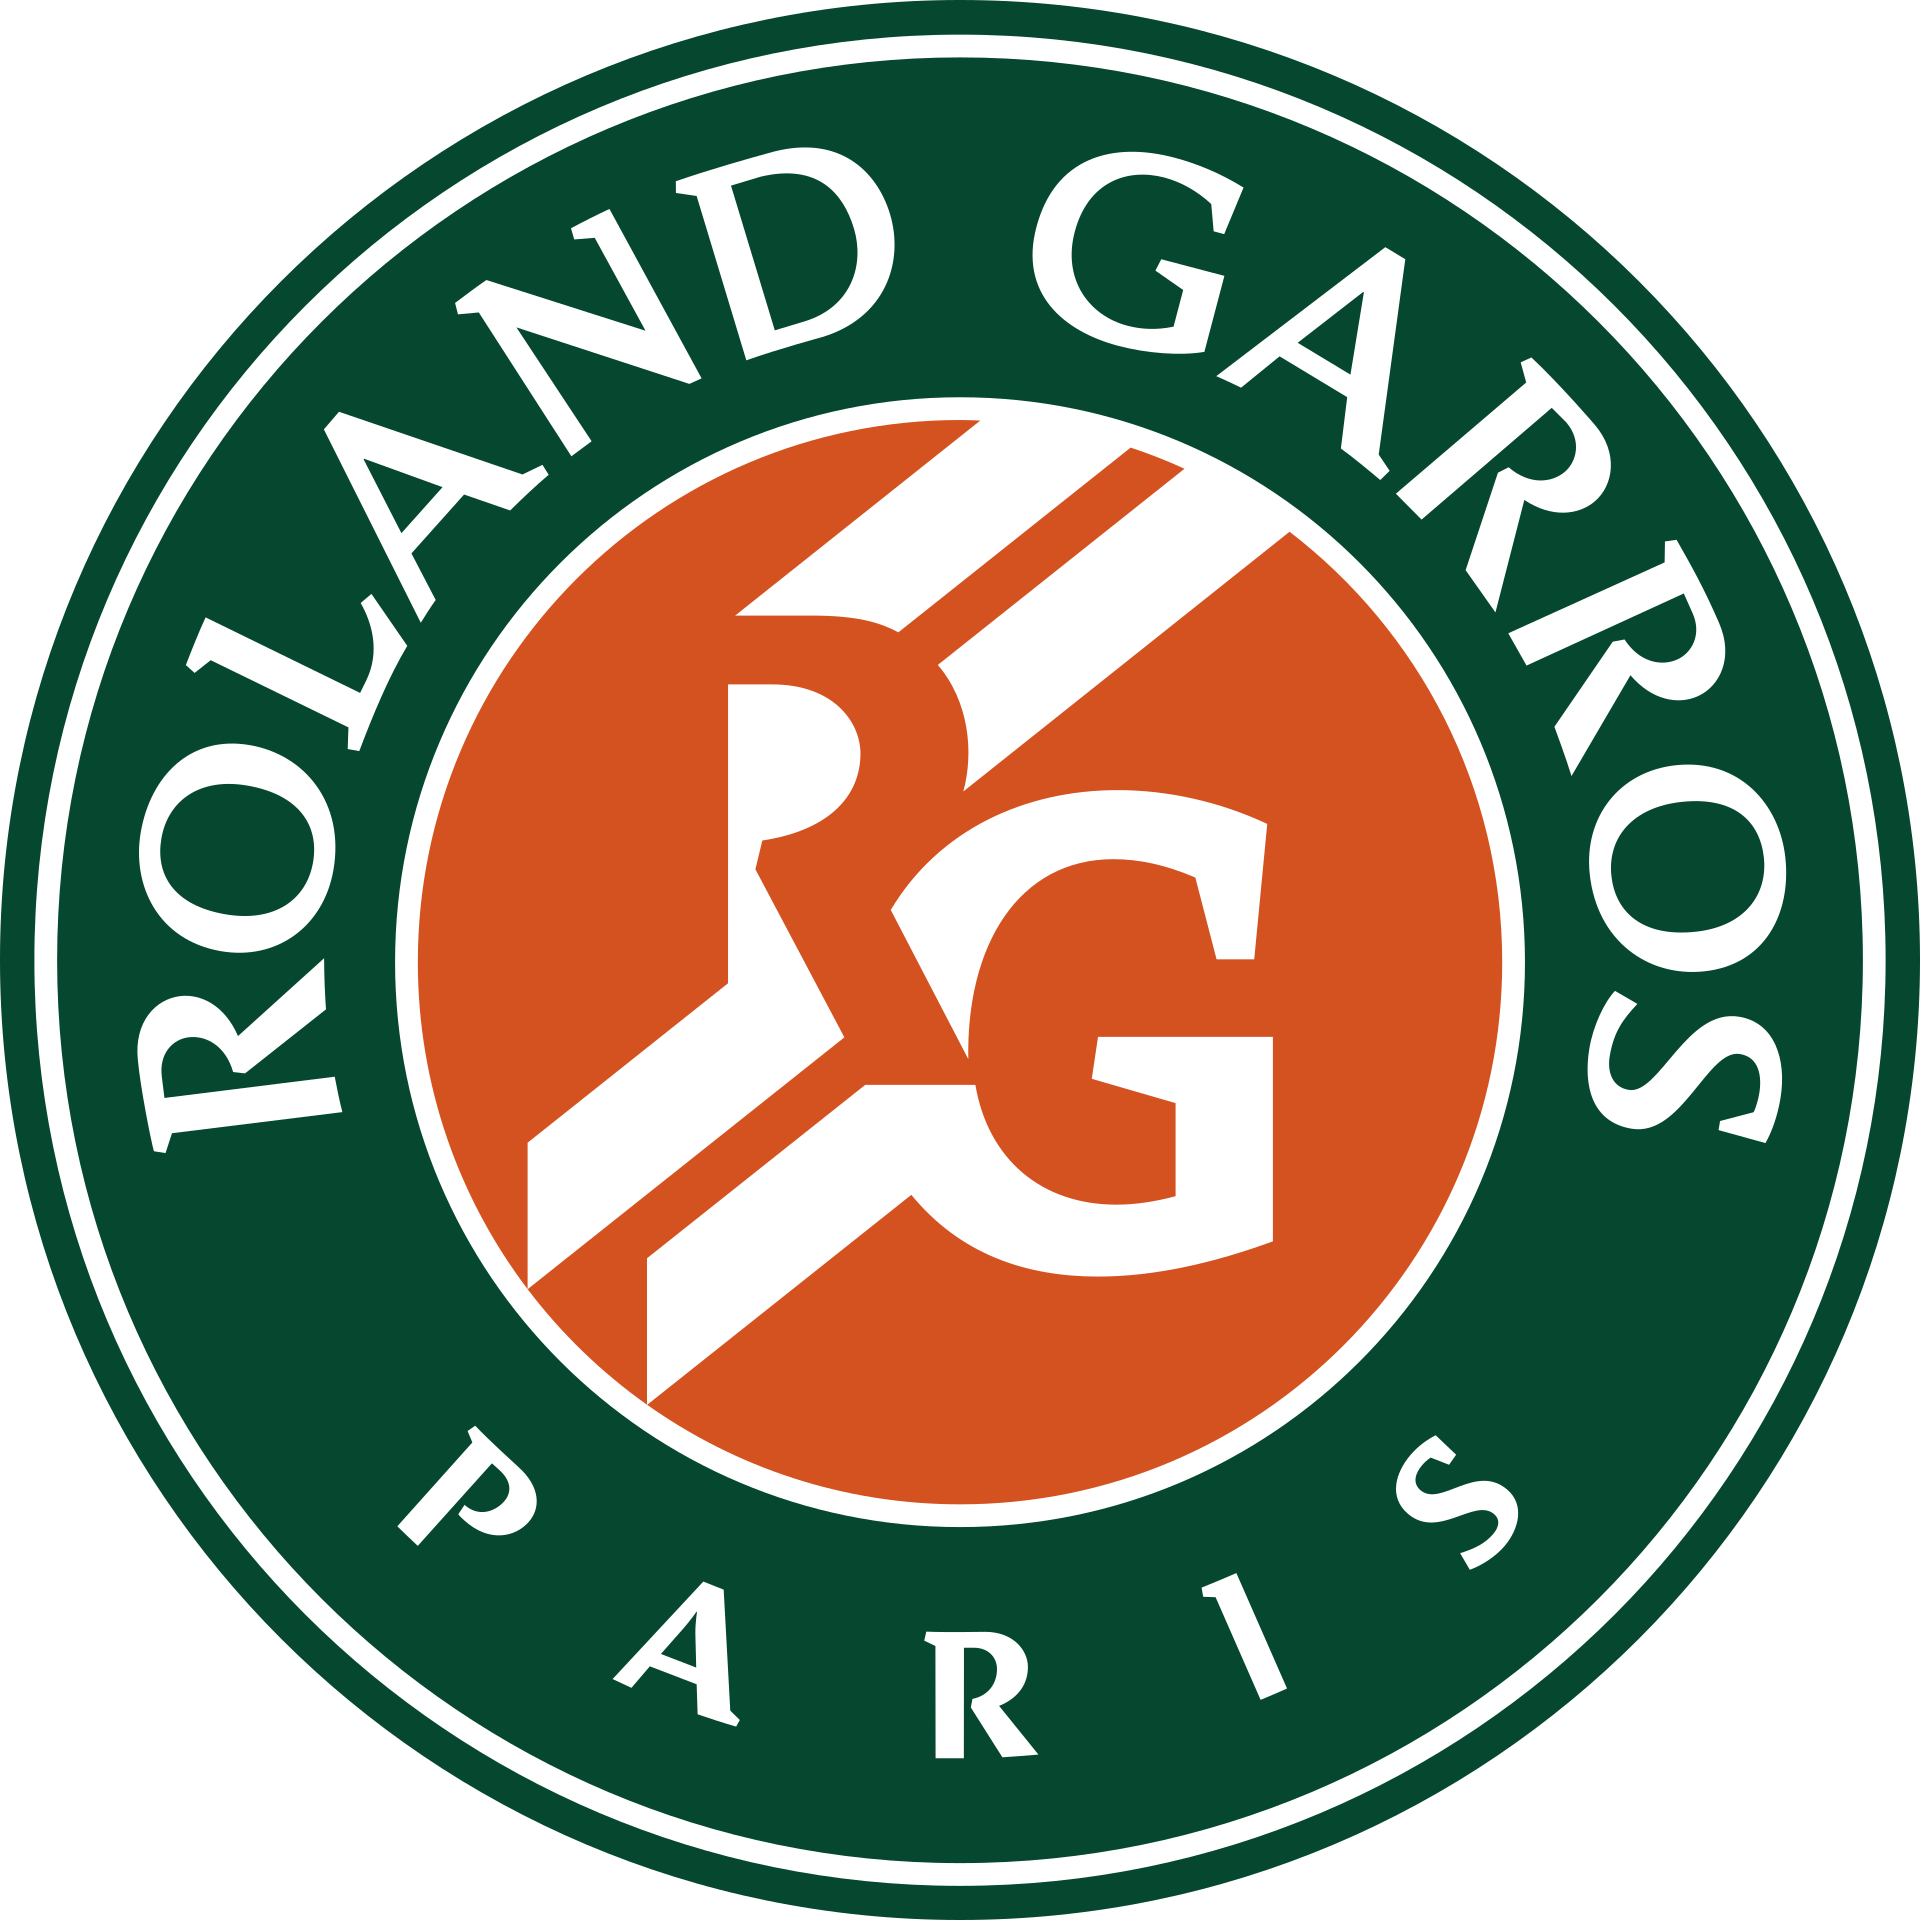 Internationaux de France de tennis — Wikipédia